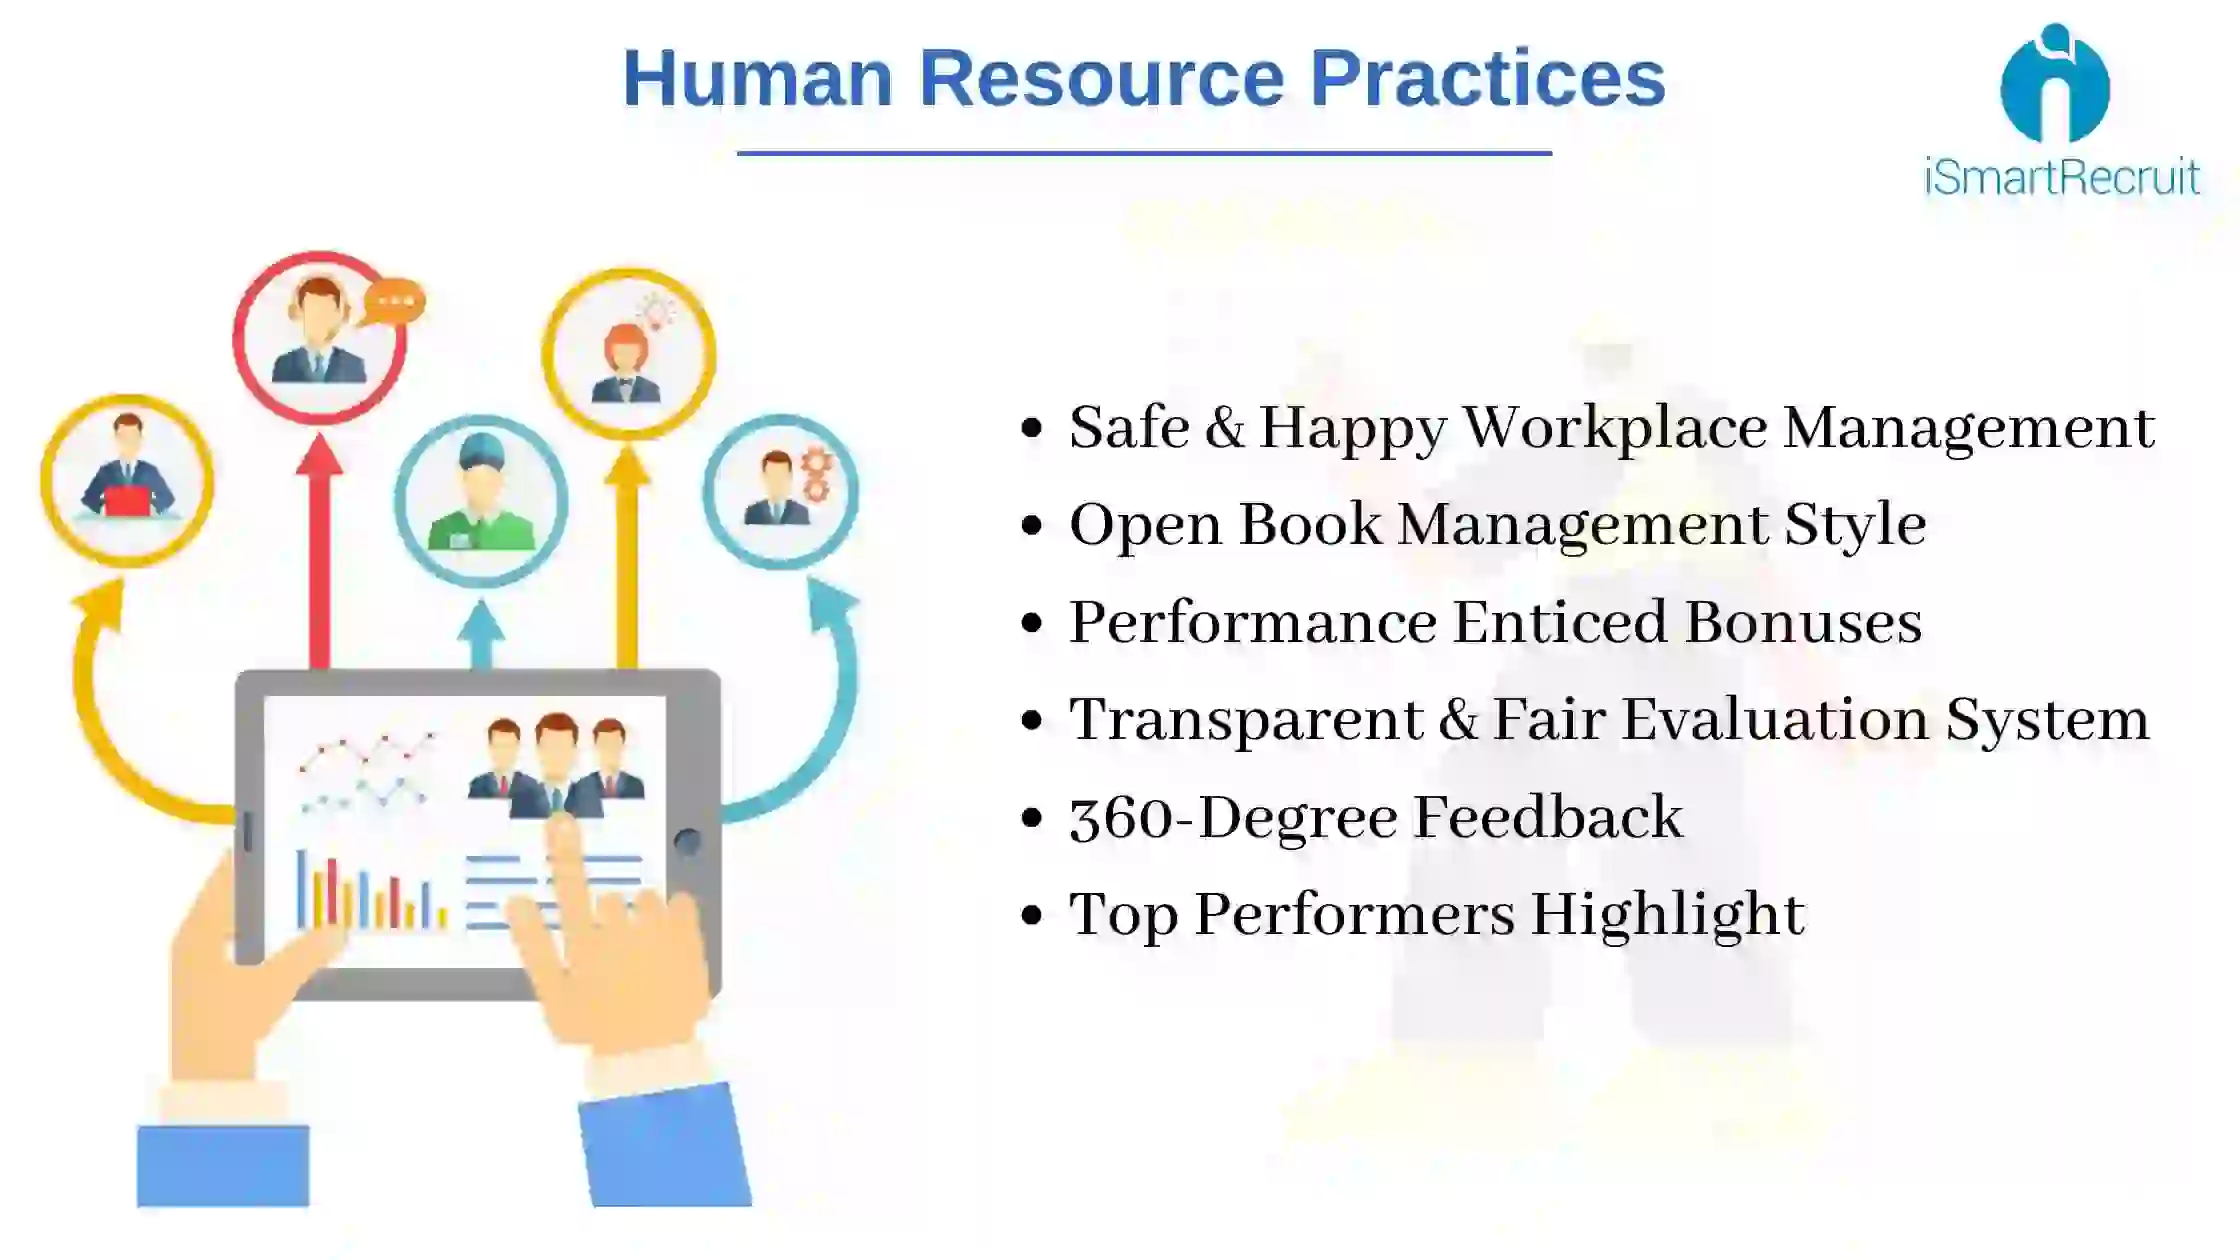 HR Practices